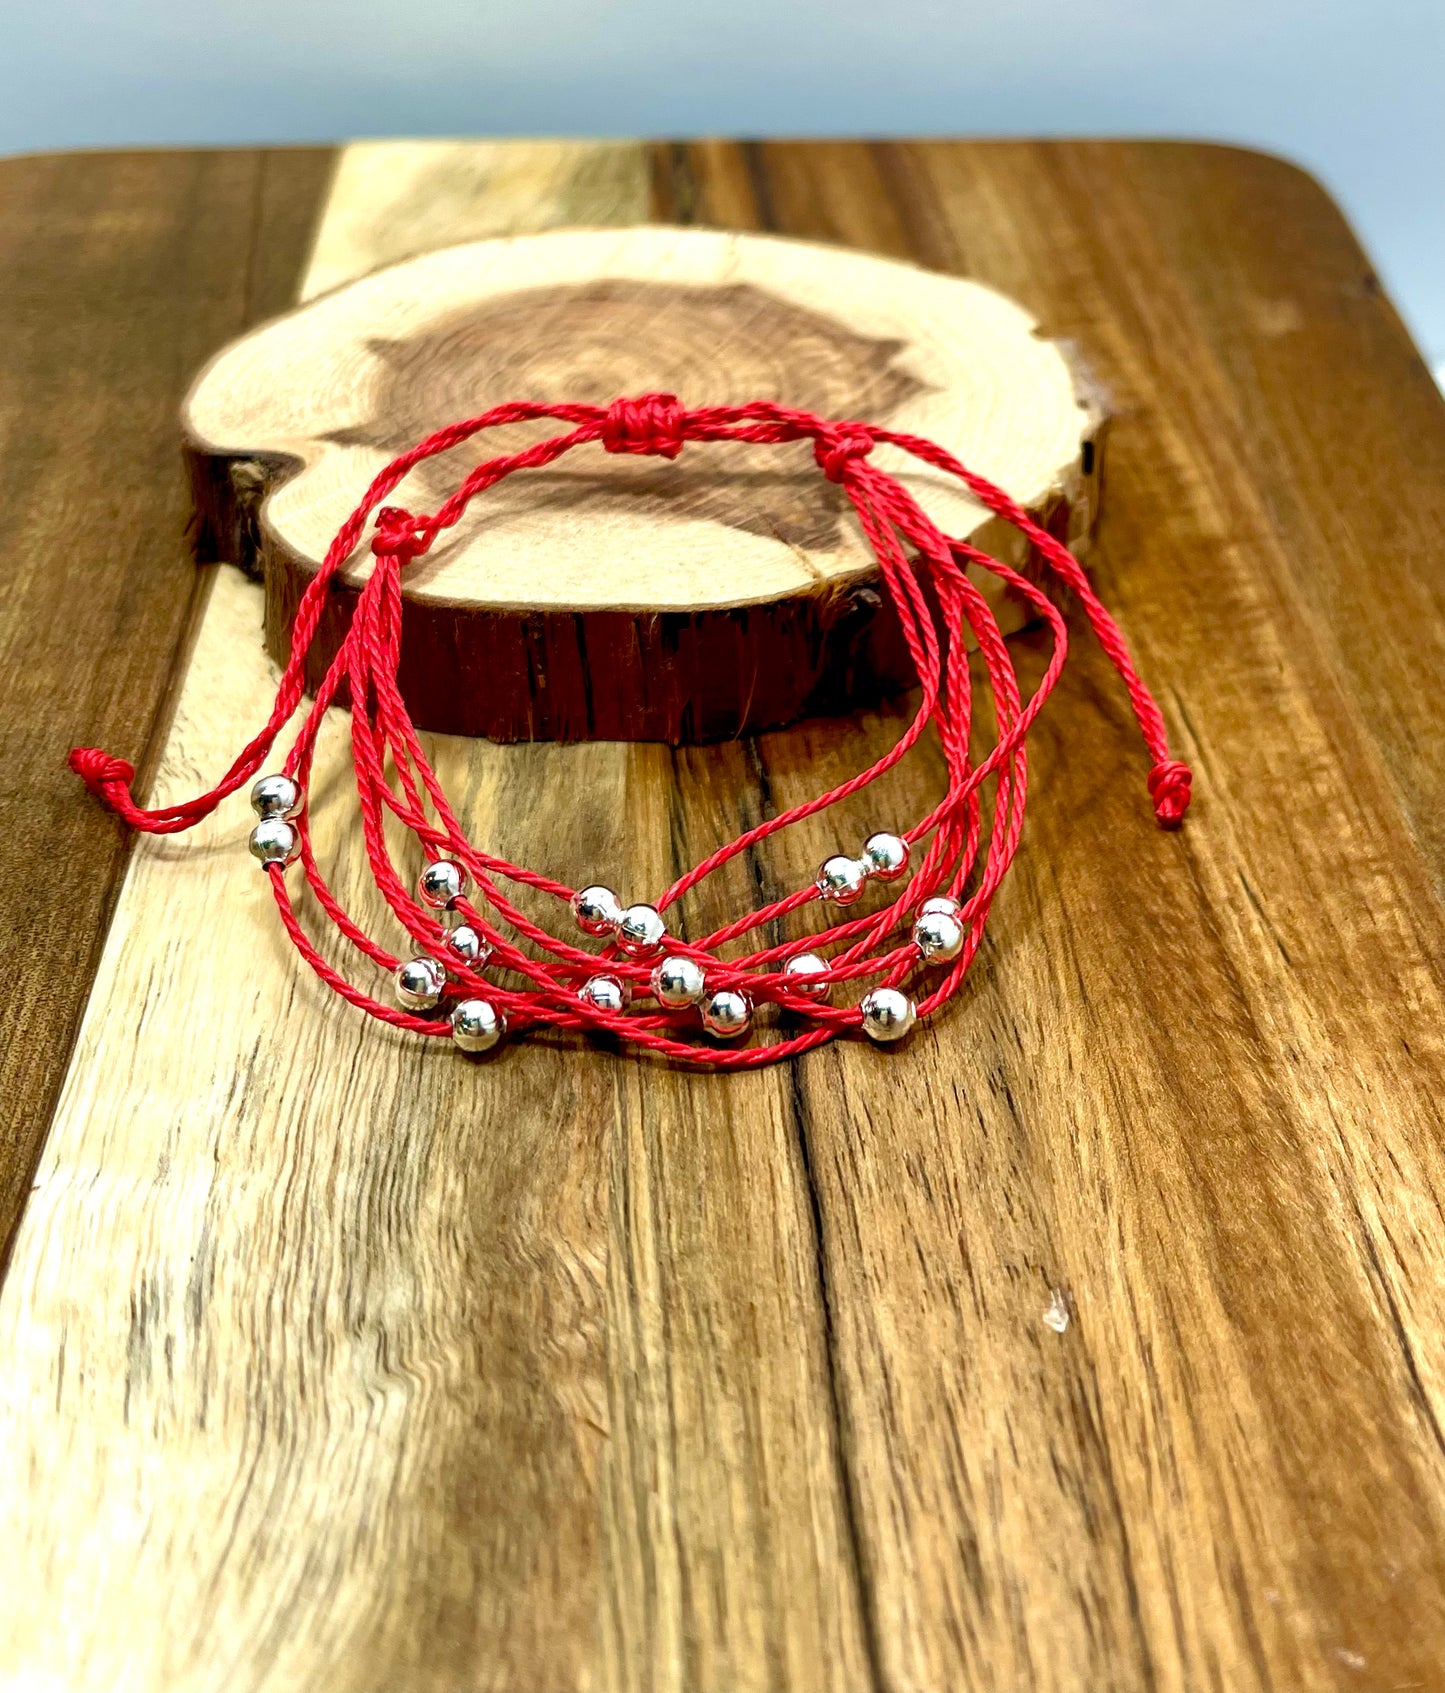 Beaded Red Friendship Bracelet